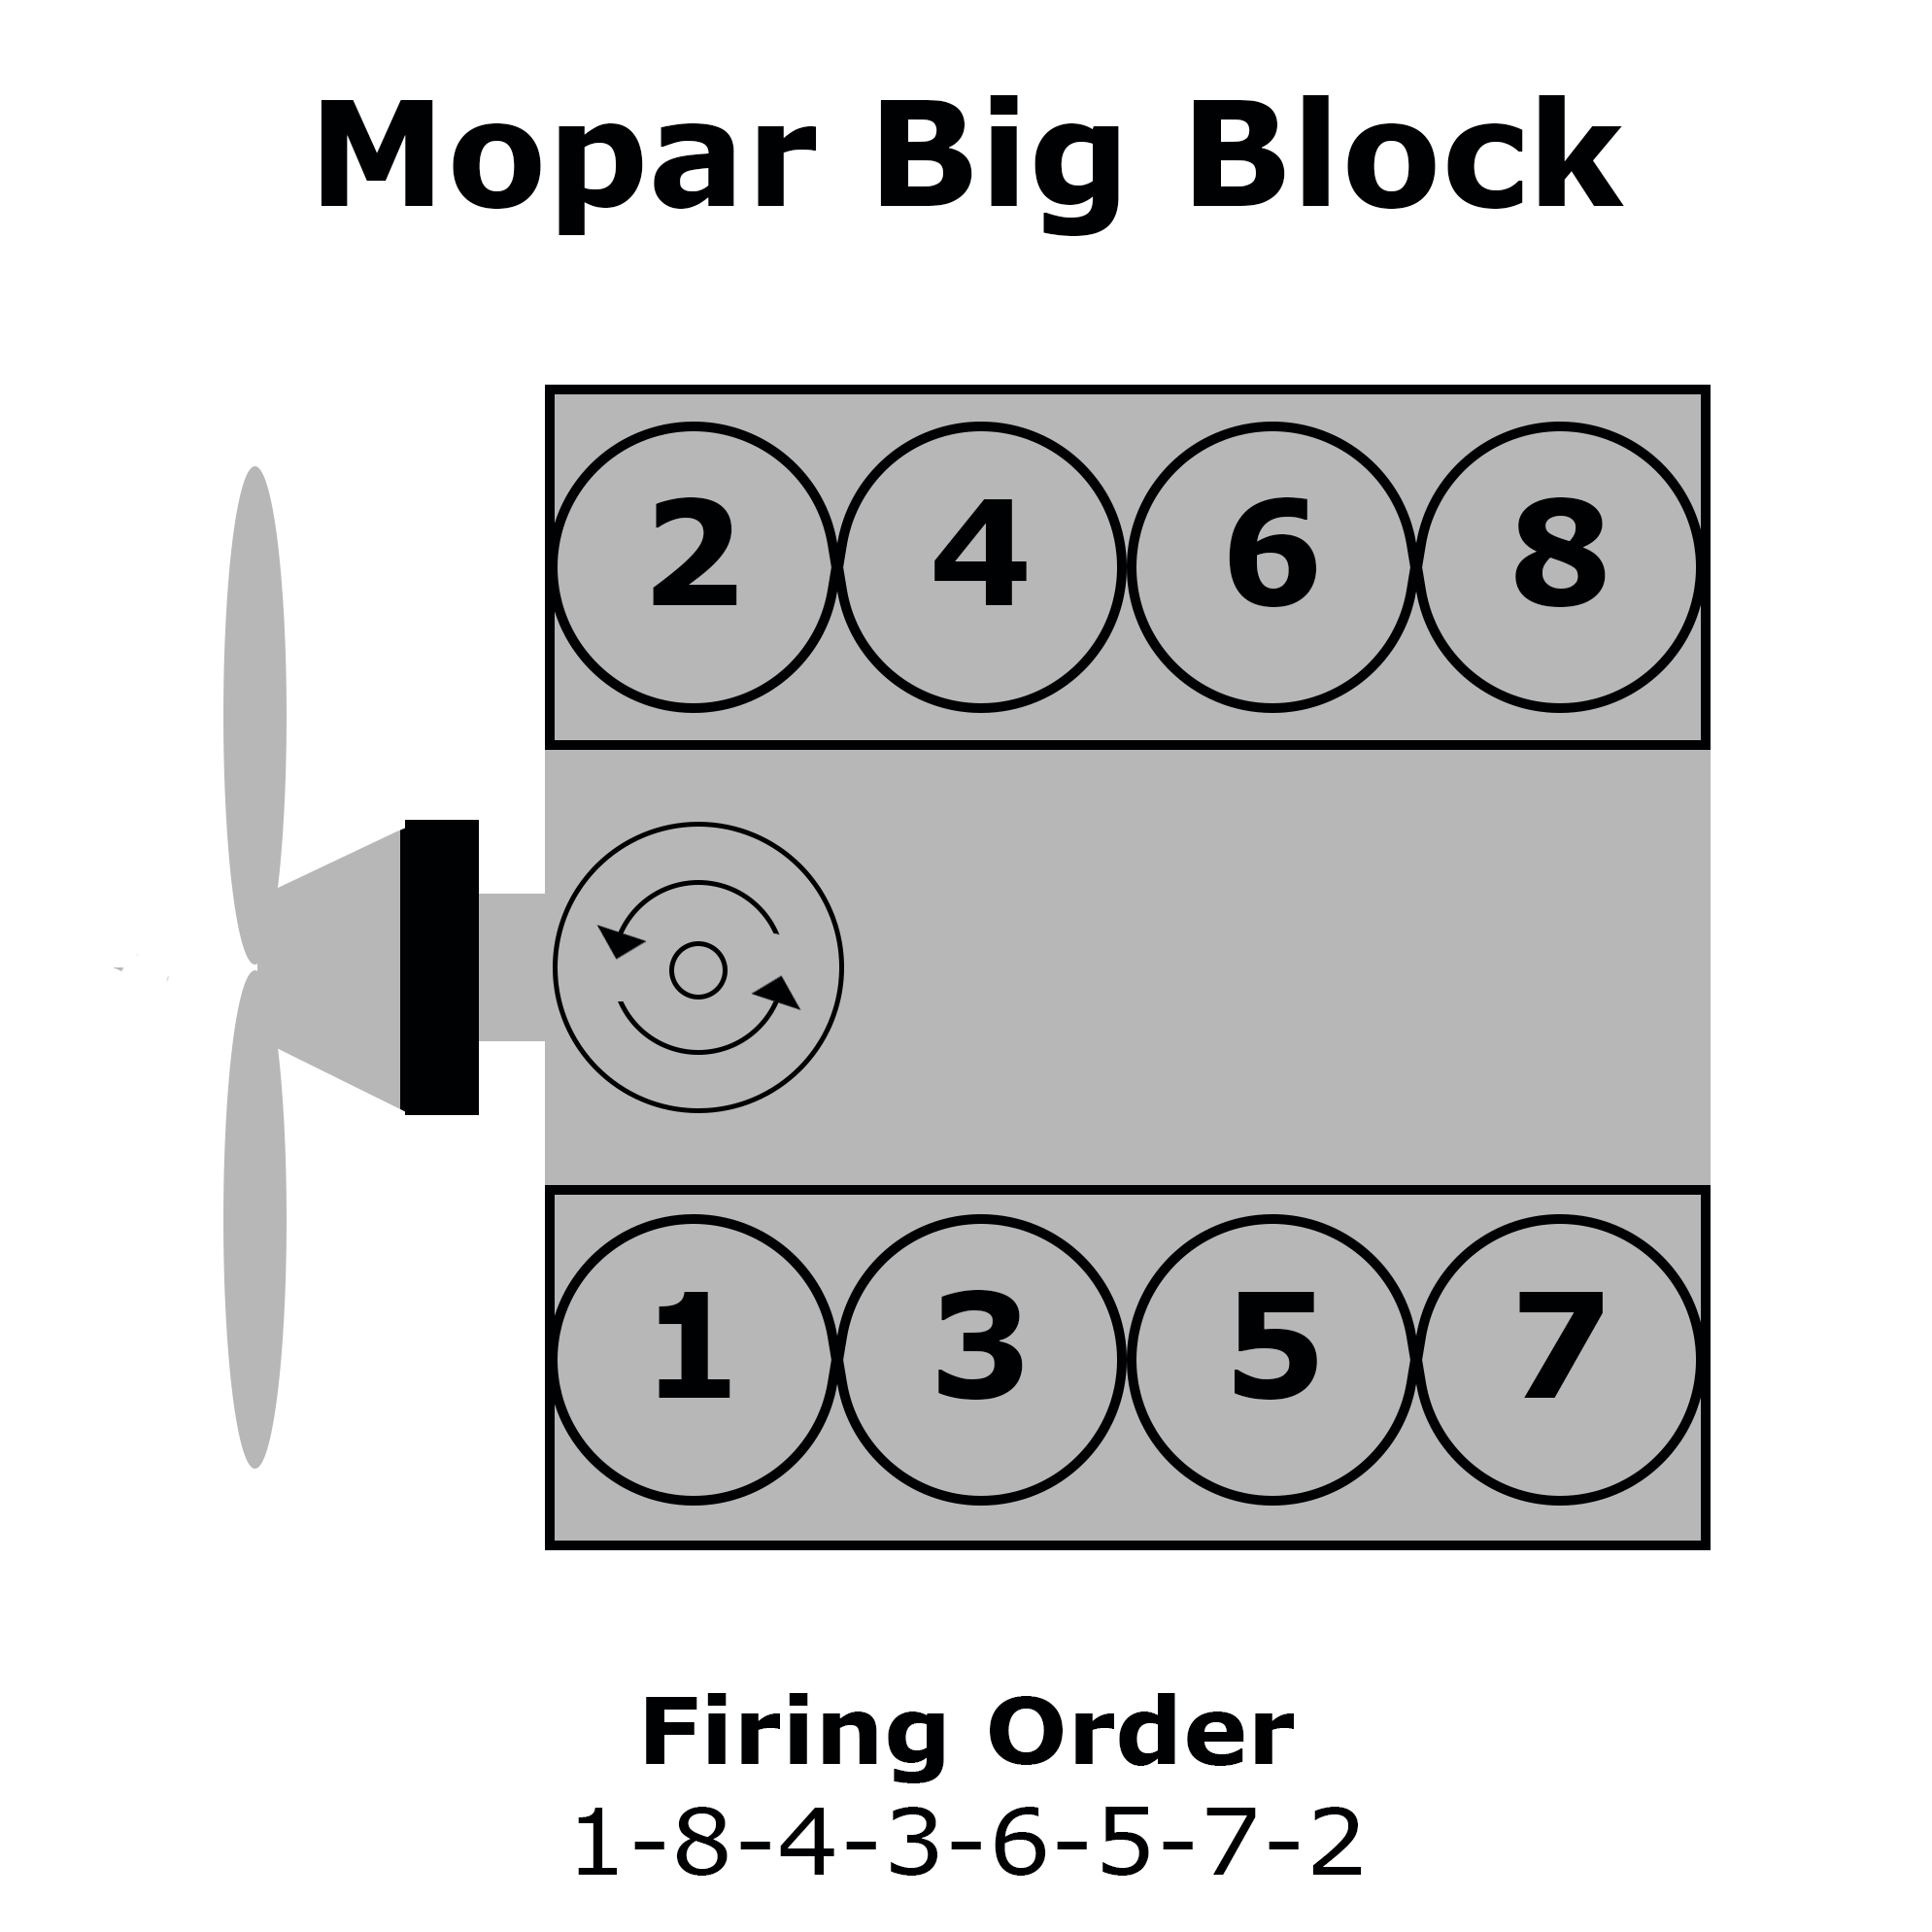 Chrysler Big Block V8 Cylinder Numbering, Distributor Rotation, and Firing Order